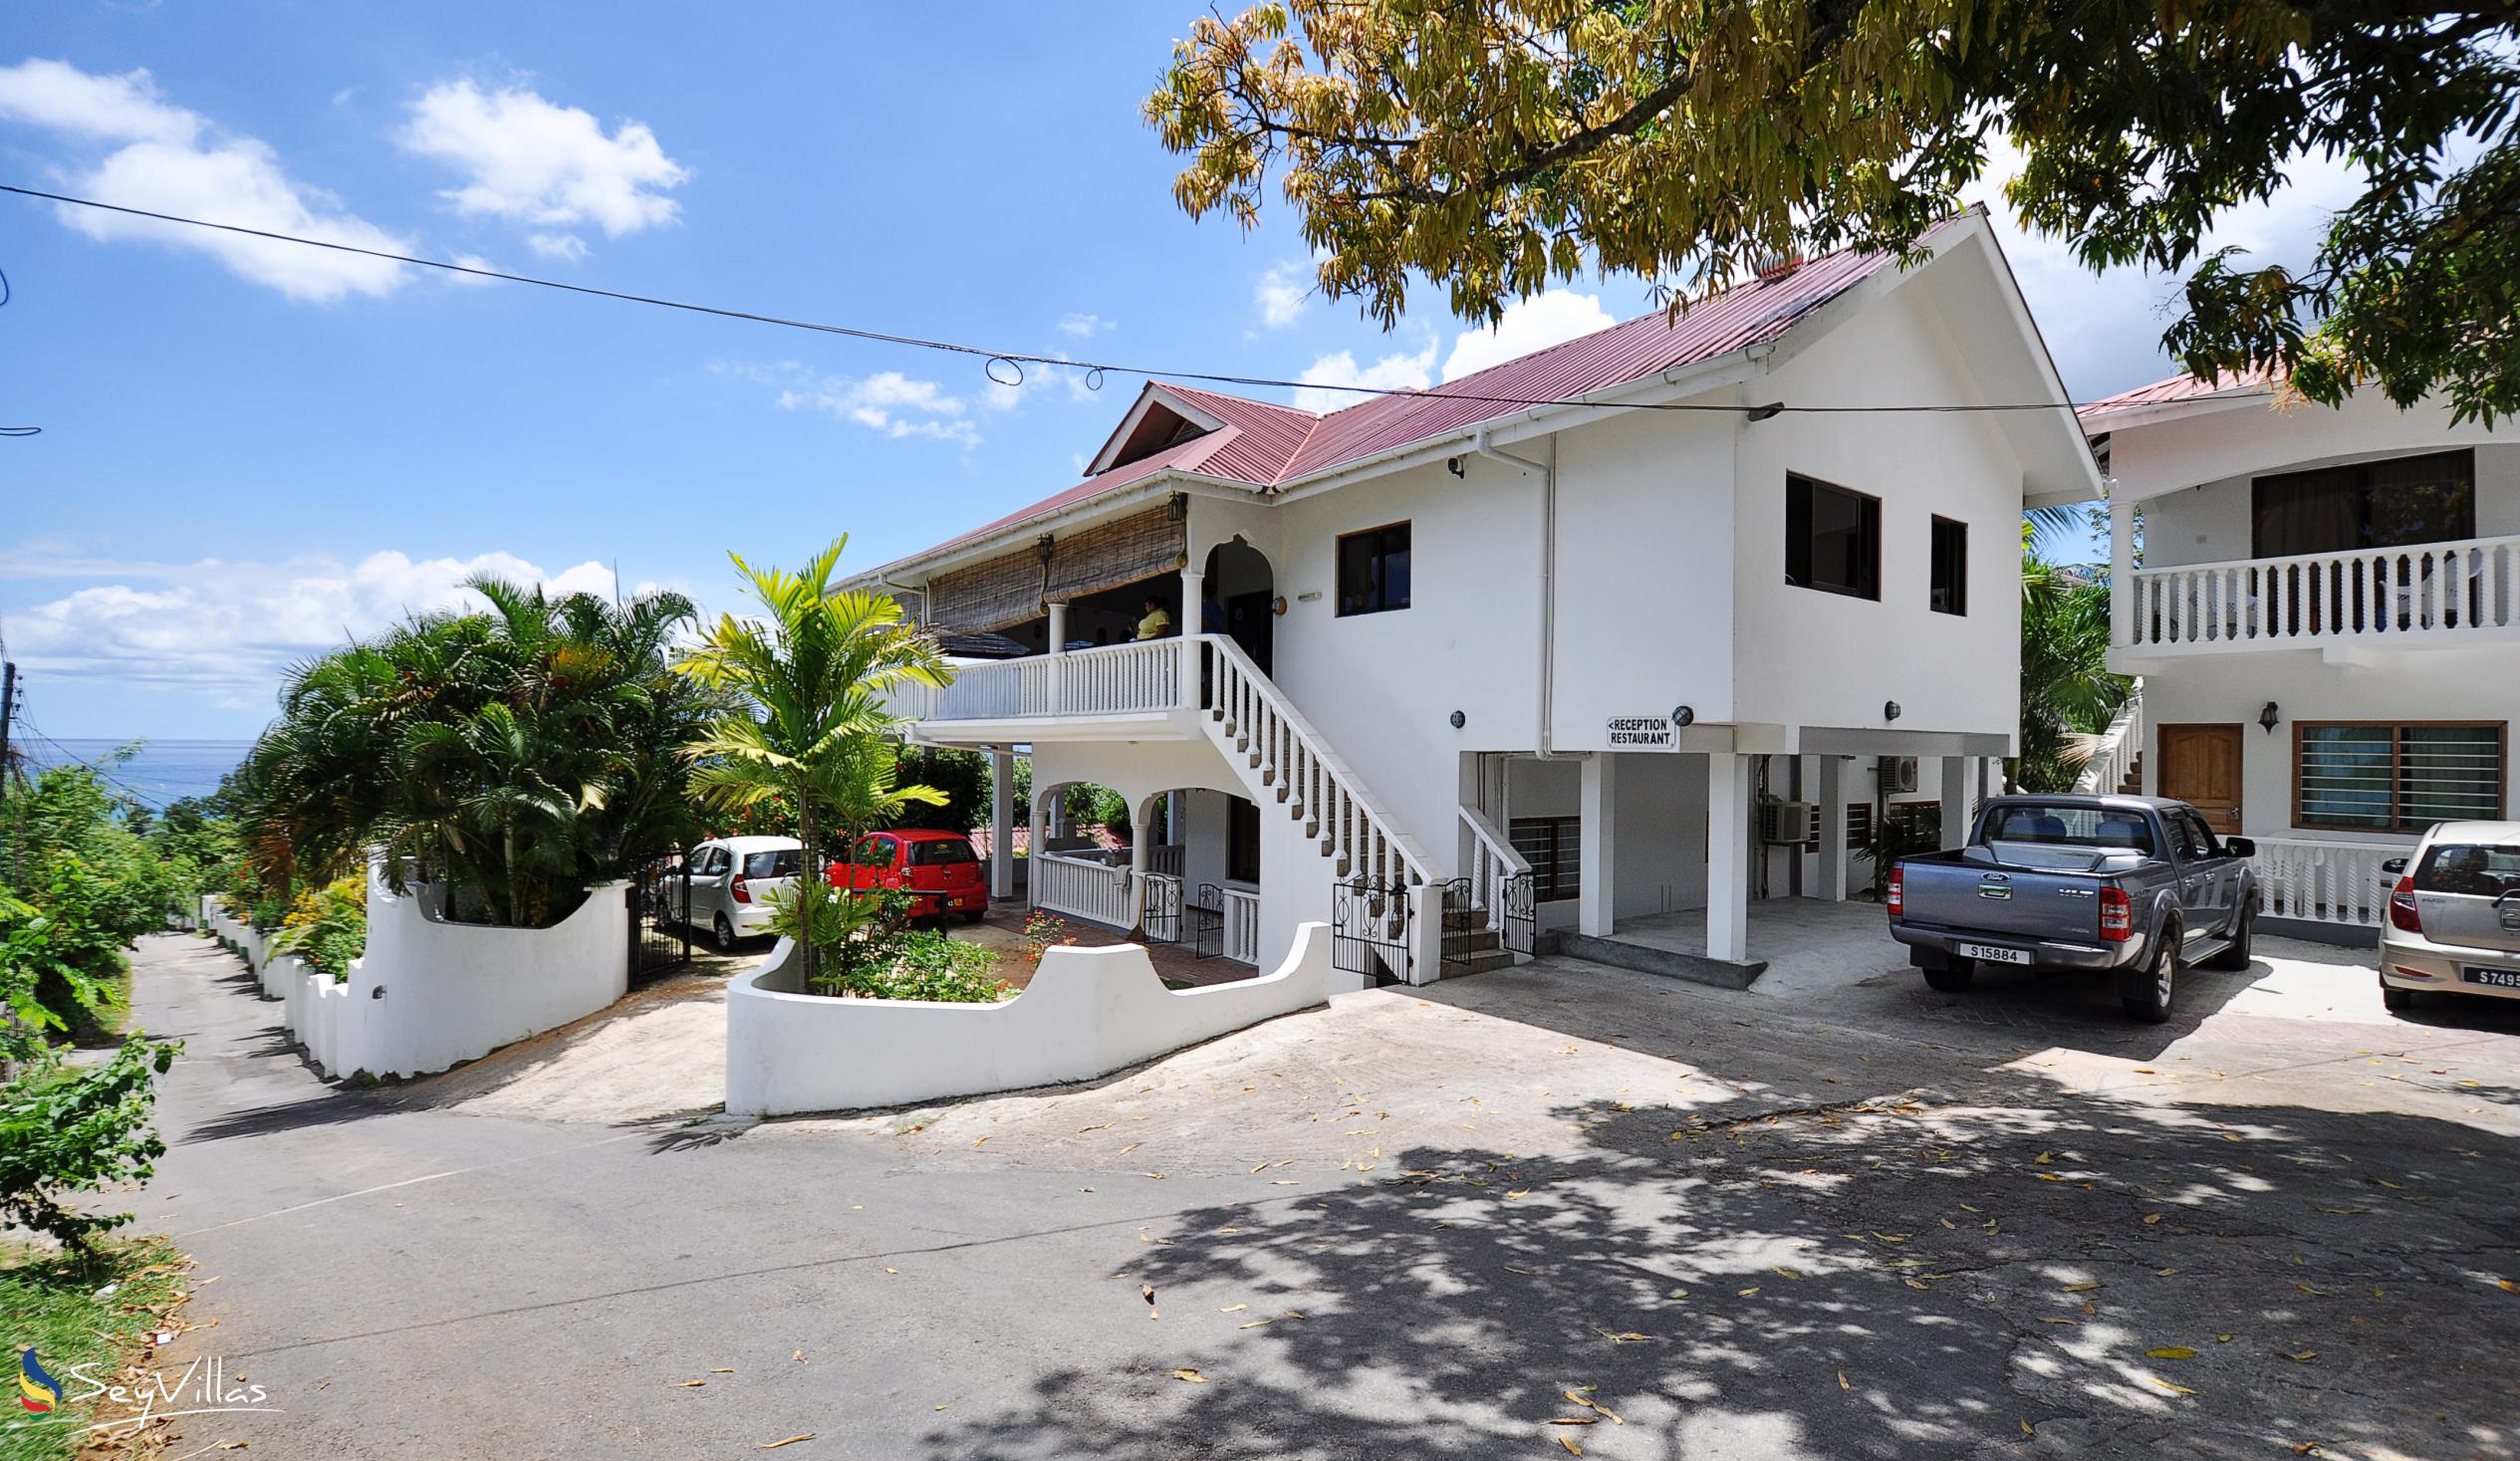 Foto 5: Casadani - Aussenbereich - Mahé (Seychellen)